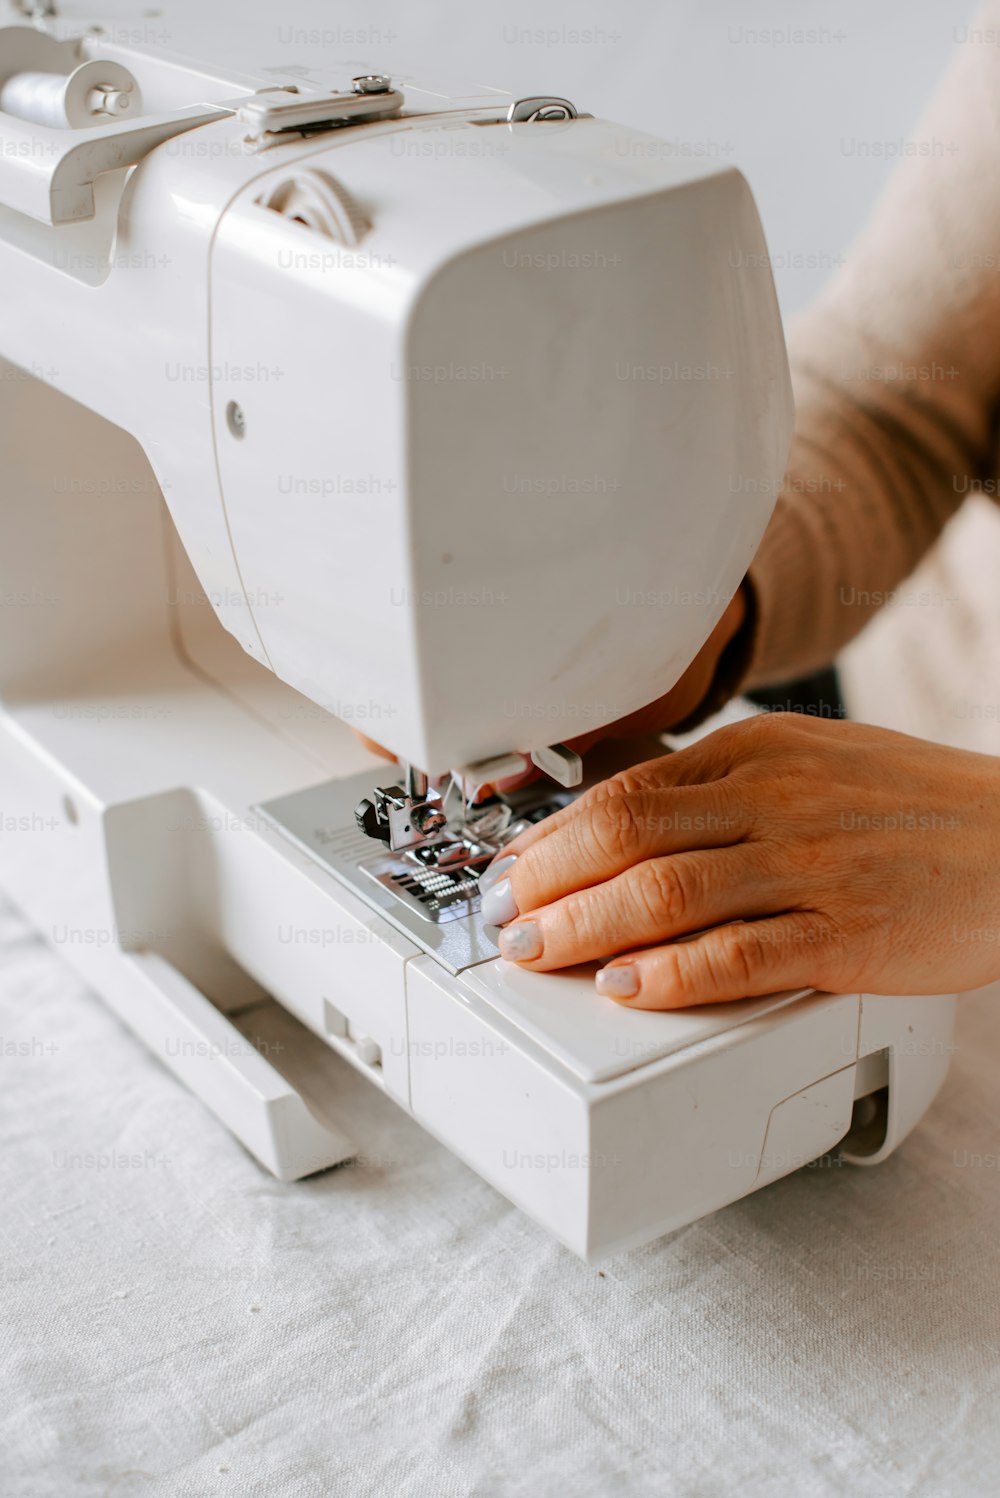 uma pessoa usando uma máquina de costura para costurar um pedaço de tecido